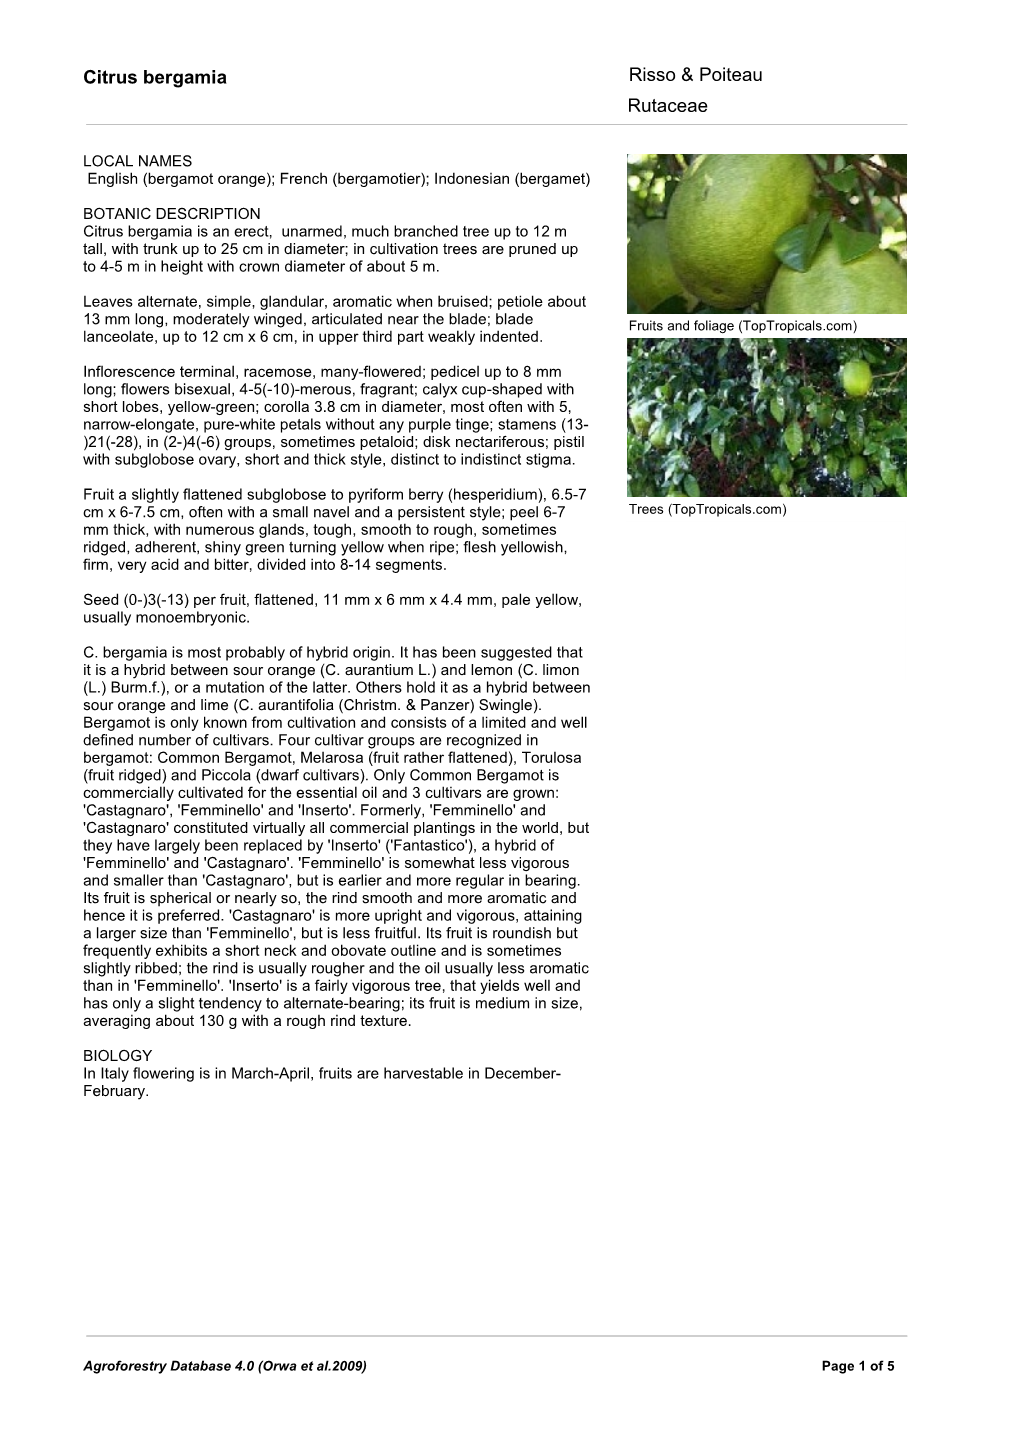 Citrus Bergamia Risso & Poiteau Rutaceae